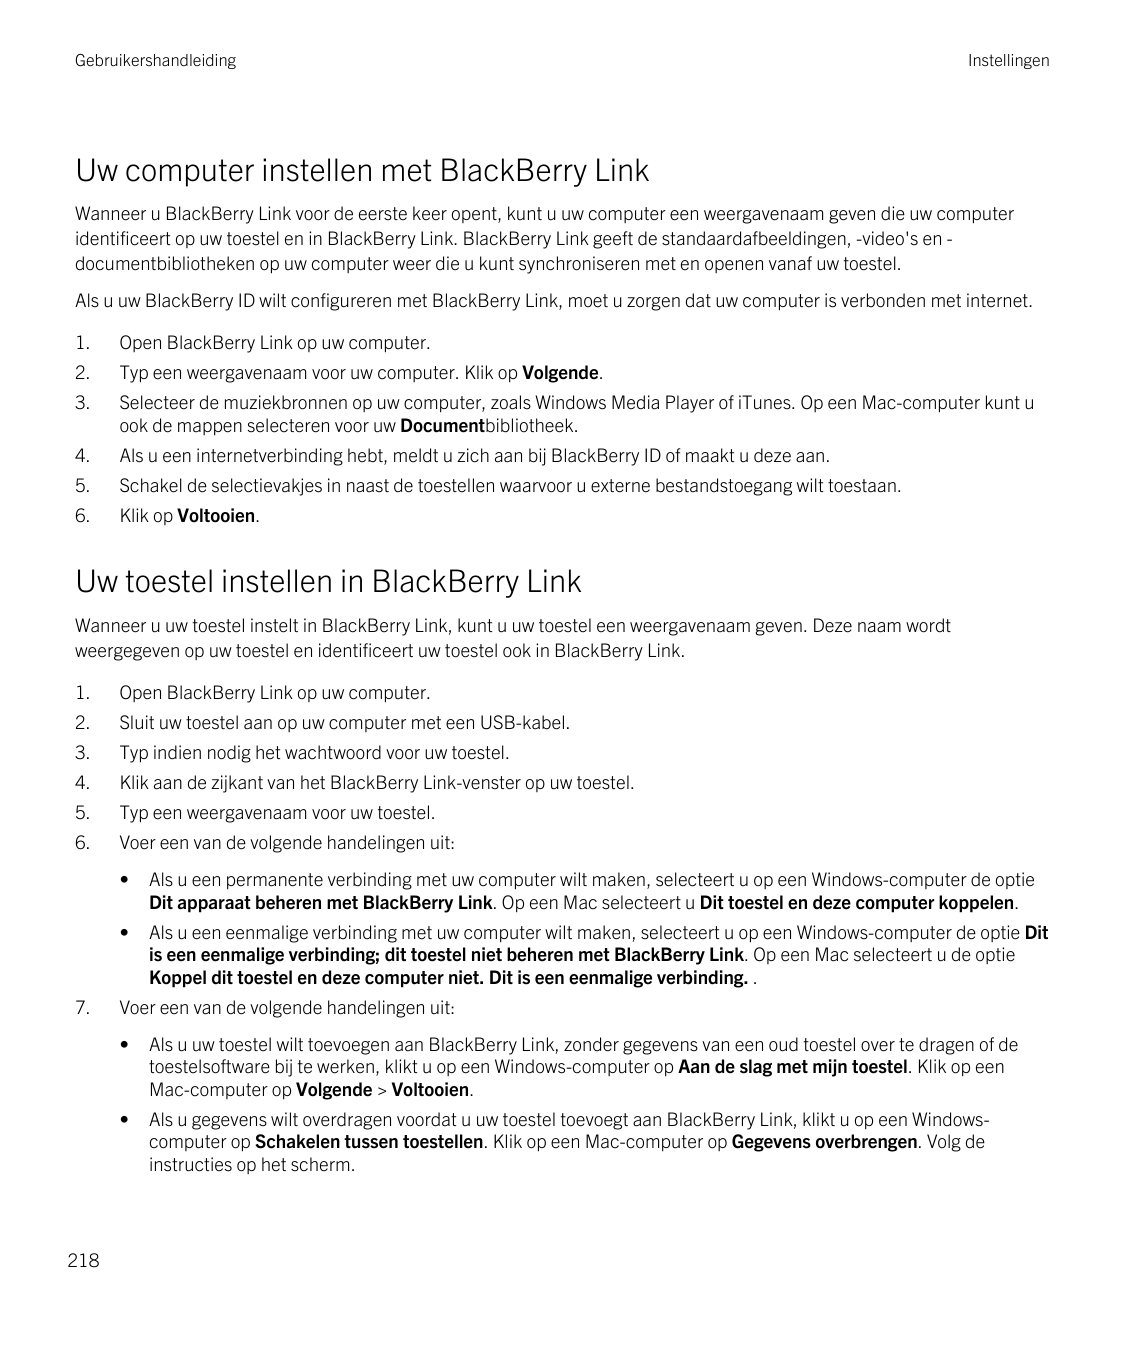 GebruikershandleidingInstellingenUw computer instellen met BlackBerry LinkWanneer u BlackBerry Link voor de eerste keer opent, k